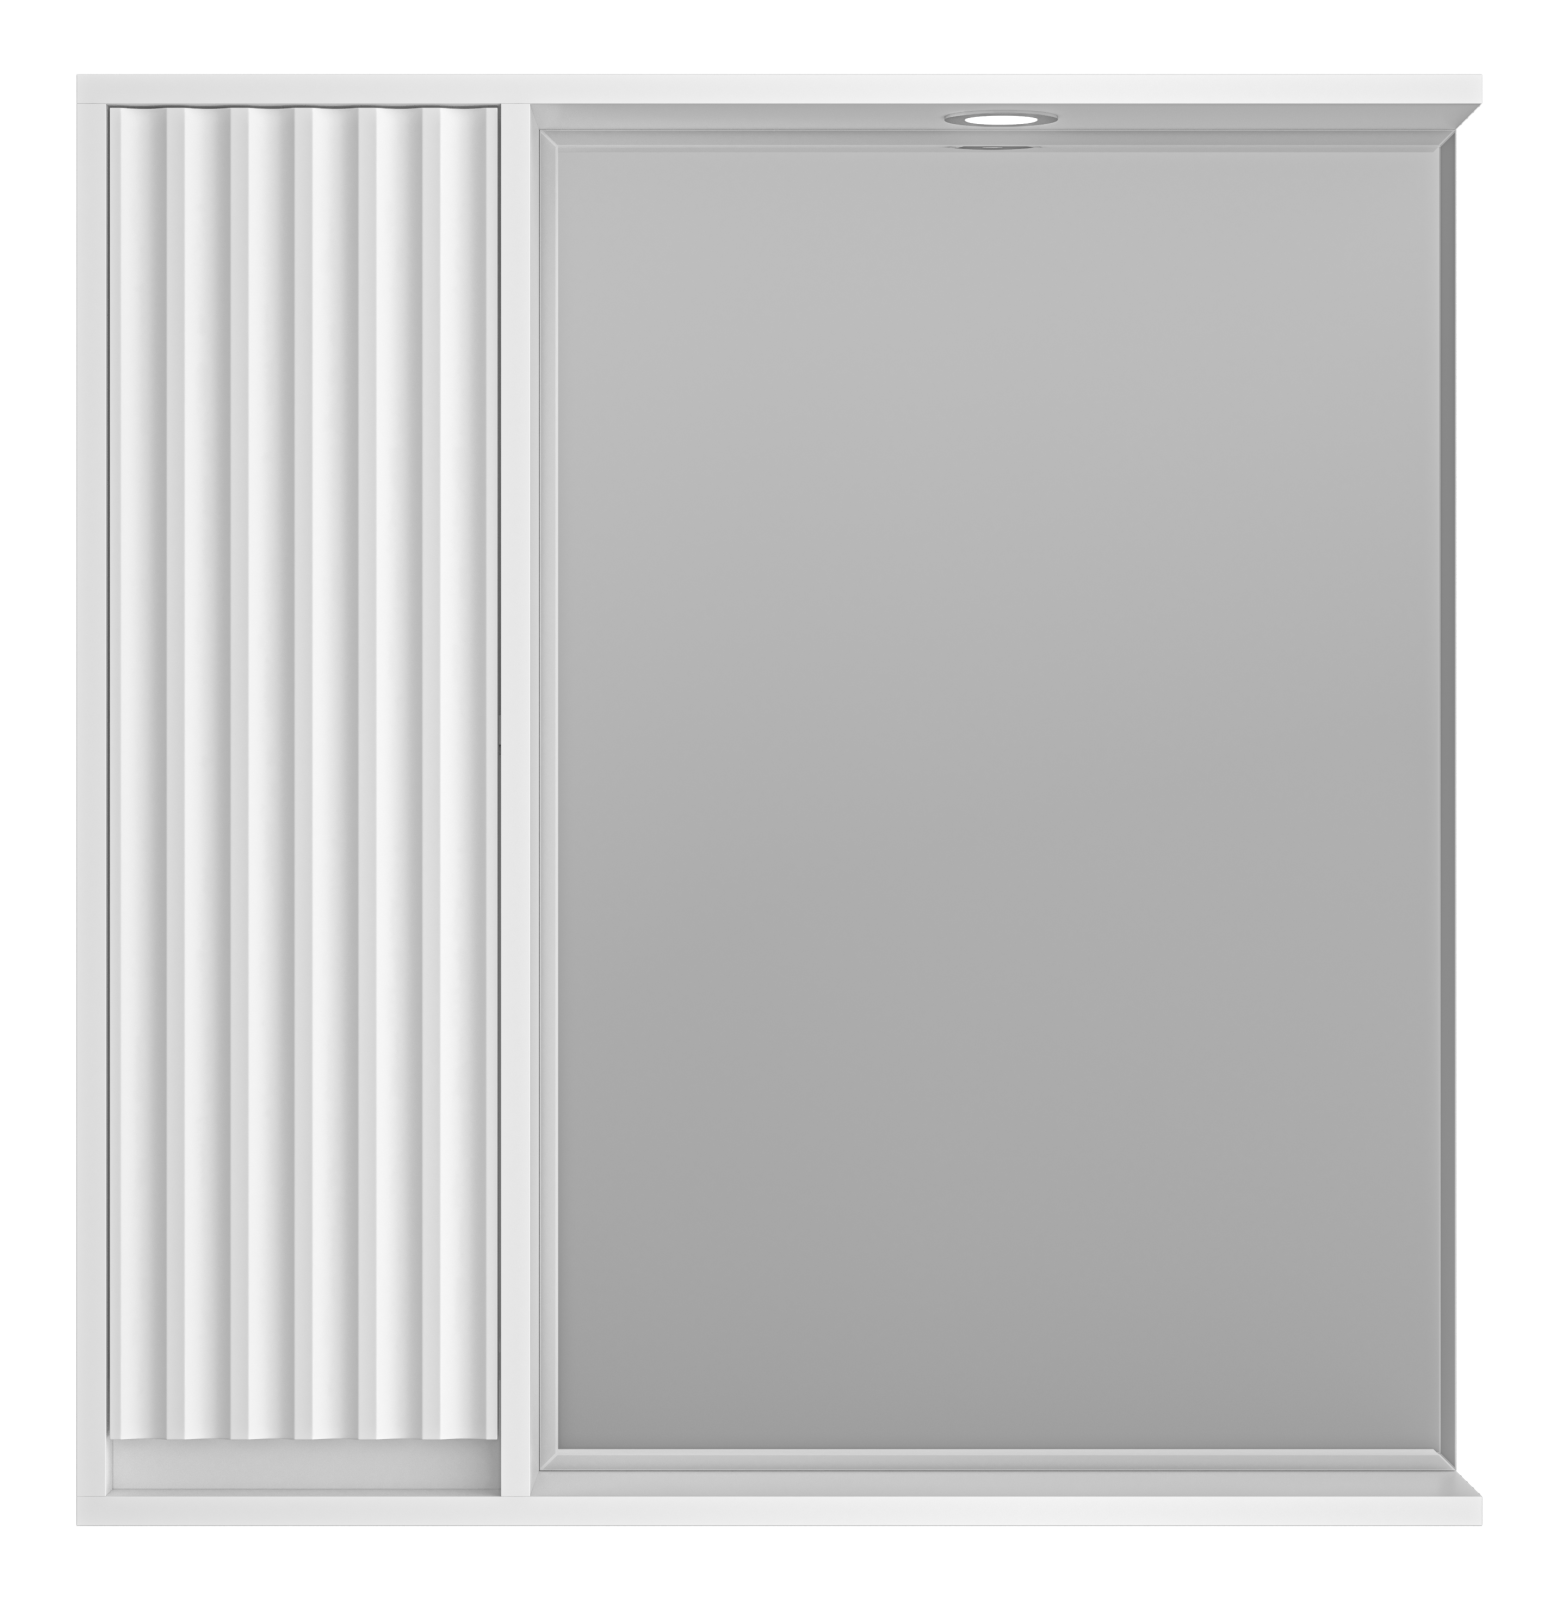 Зеркальный шкаф Brevita Balaton 80 см BAL-04080-01-Л левый, с подсветкой, белый